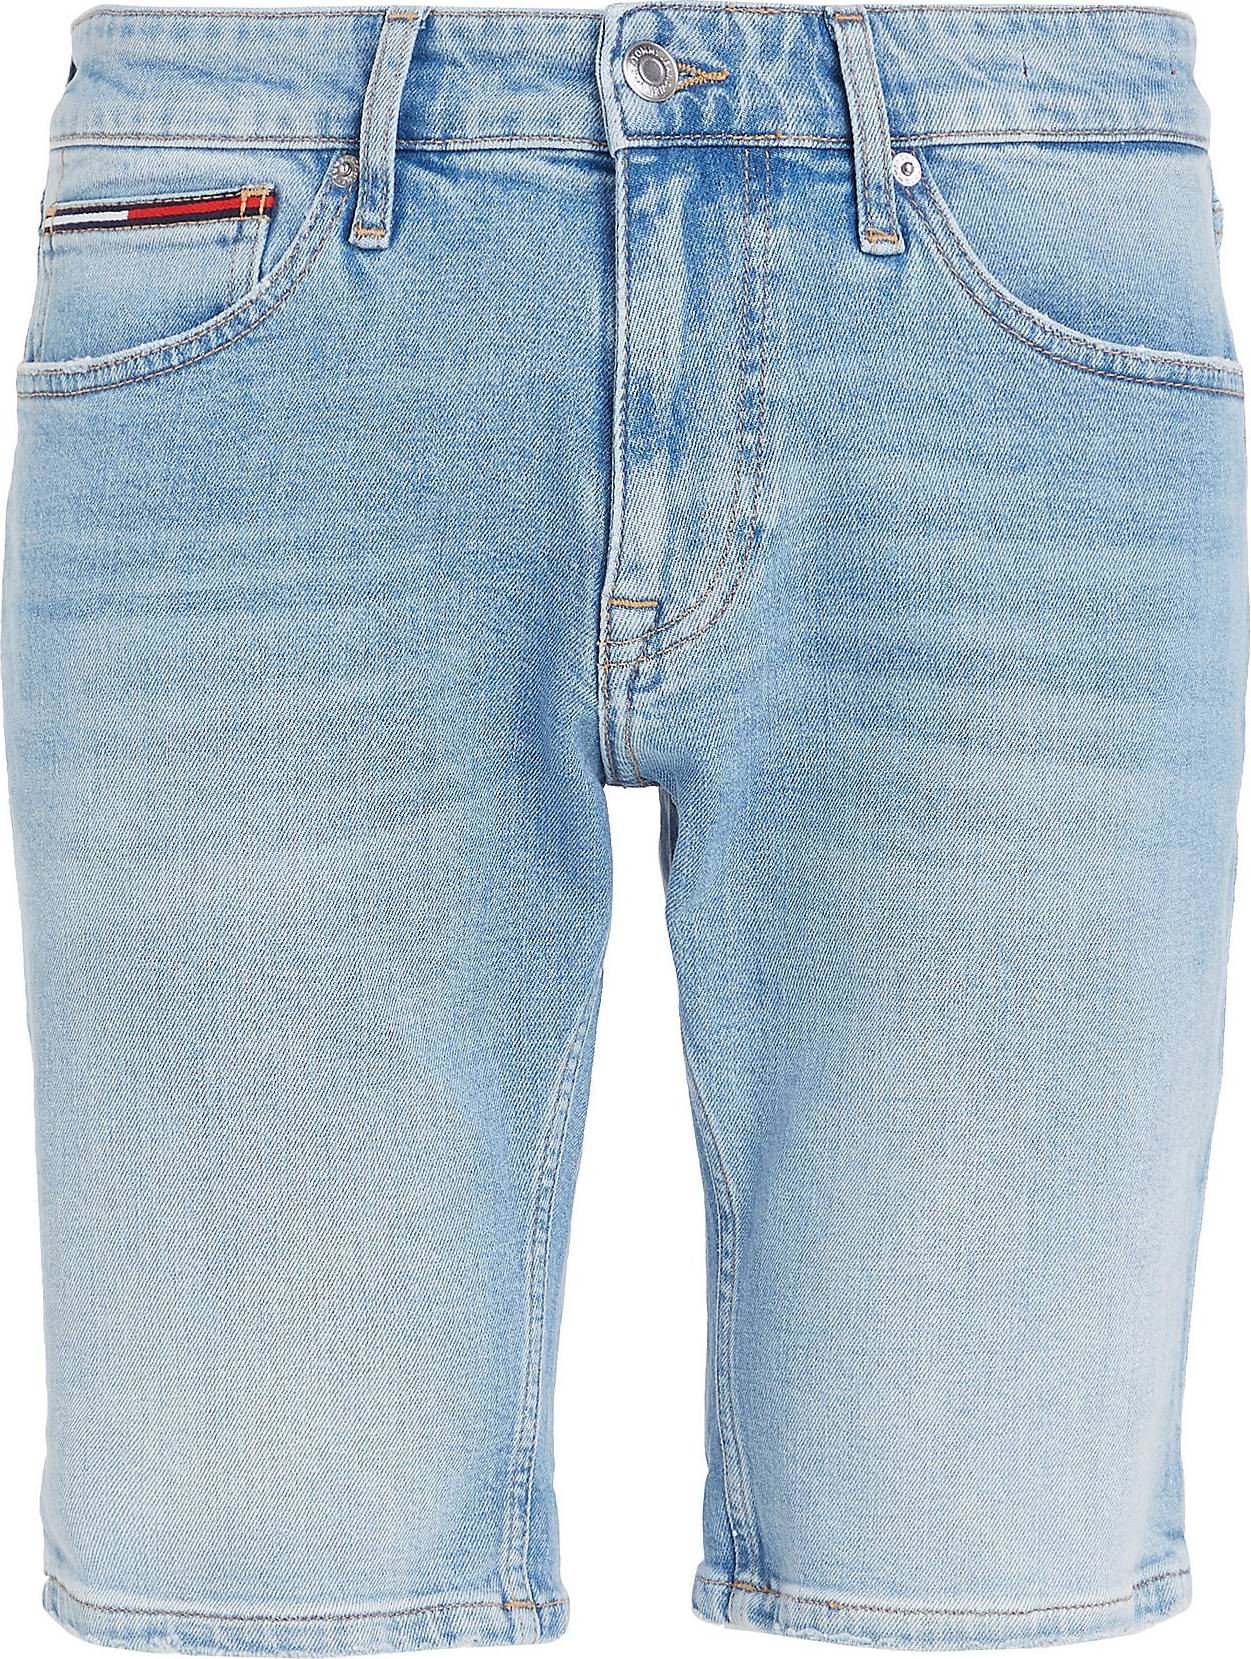 Džíny 'Scanton' Tommy Jeans námořnická modř / světlemodrá / červená / bílá